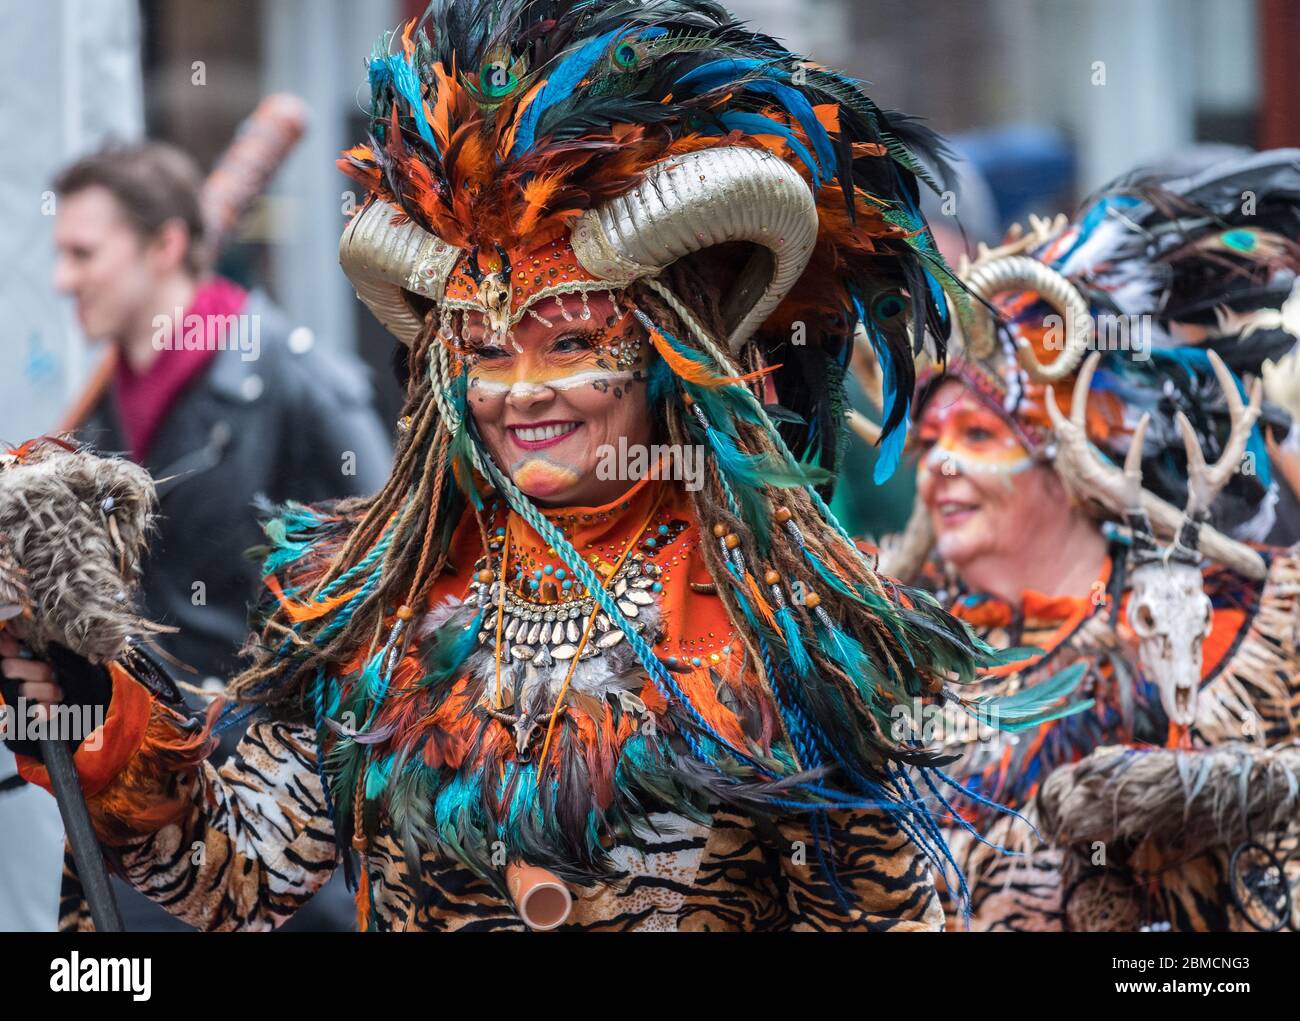 Maastricht, Pays-Bas - février 2020: Les couleurs, les costumes et le maquillage pour les célébrations du Mardi gras dans la provocation Limbourg Banque D'Images